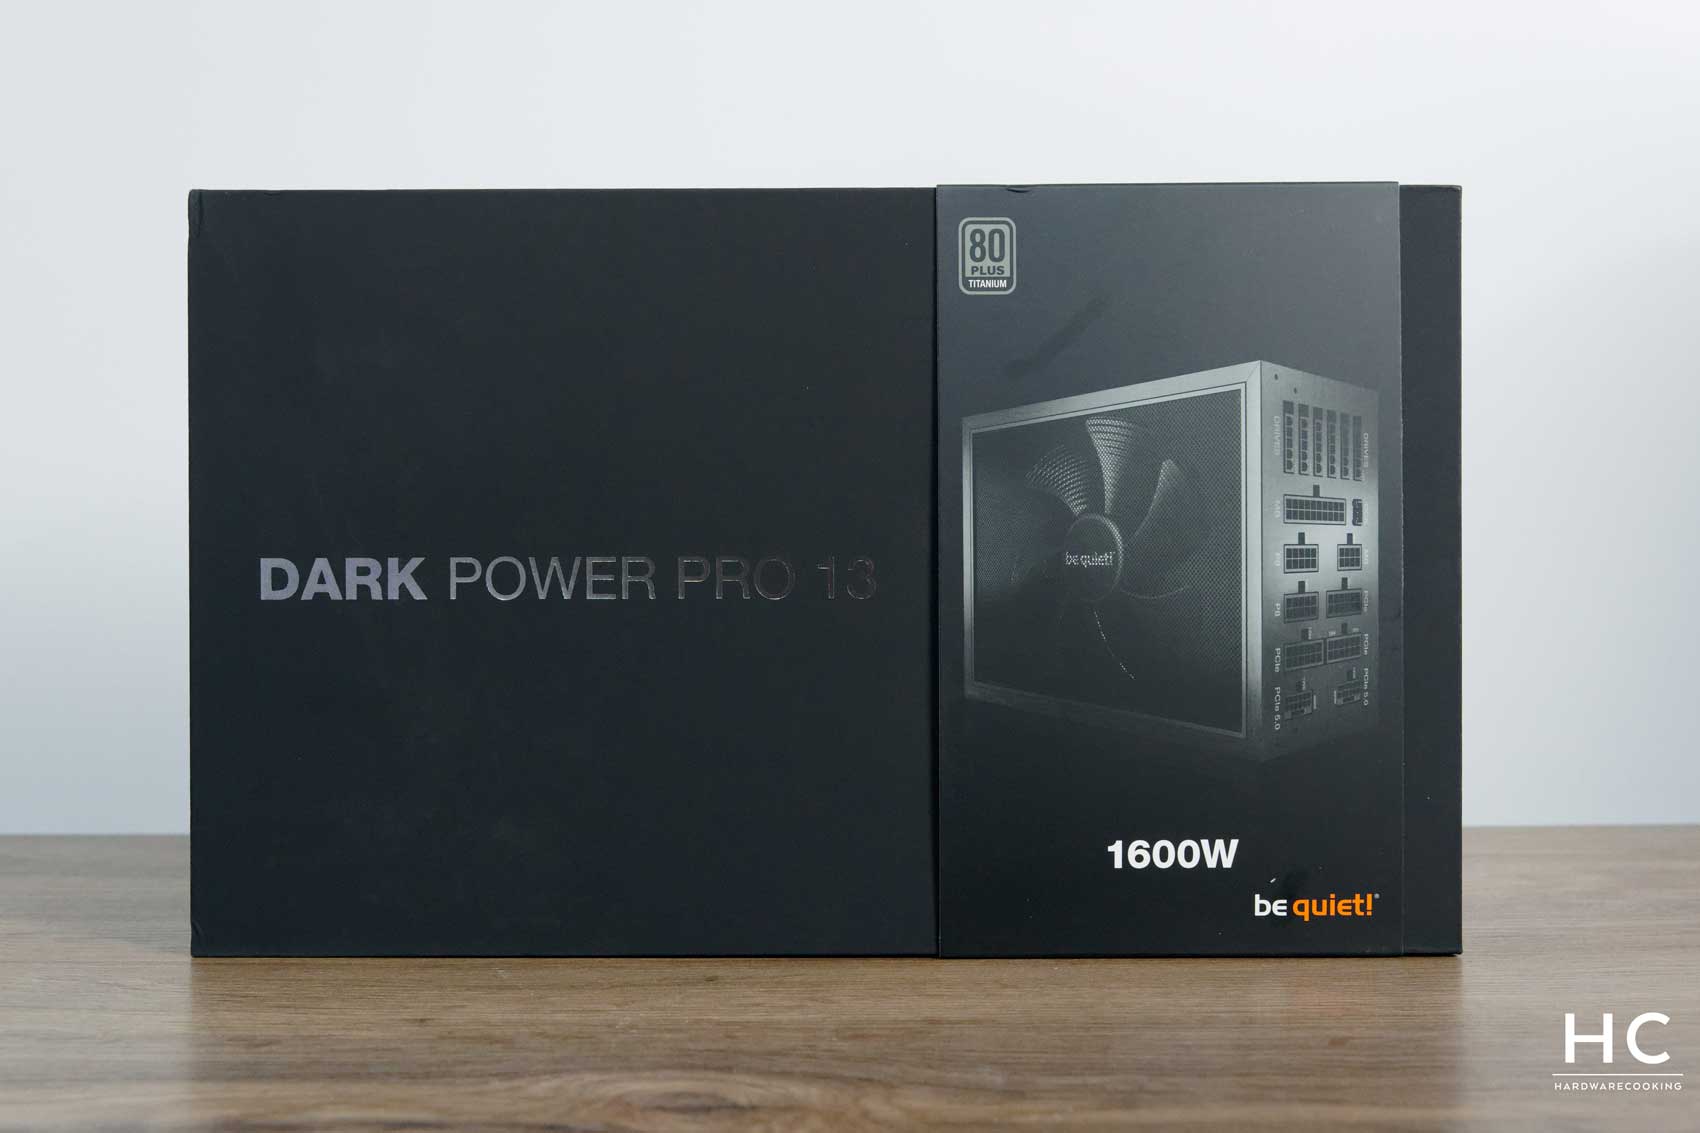 Test : be quiet! Dark Power Pro 13 1600W